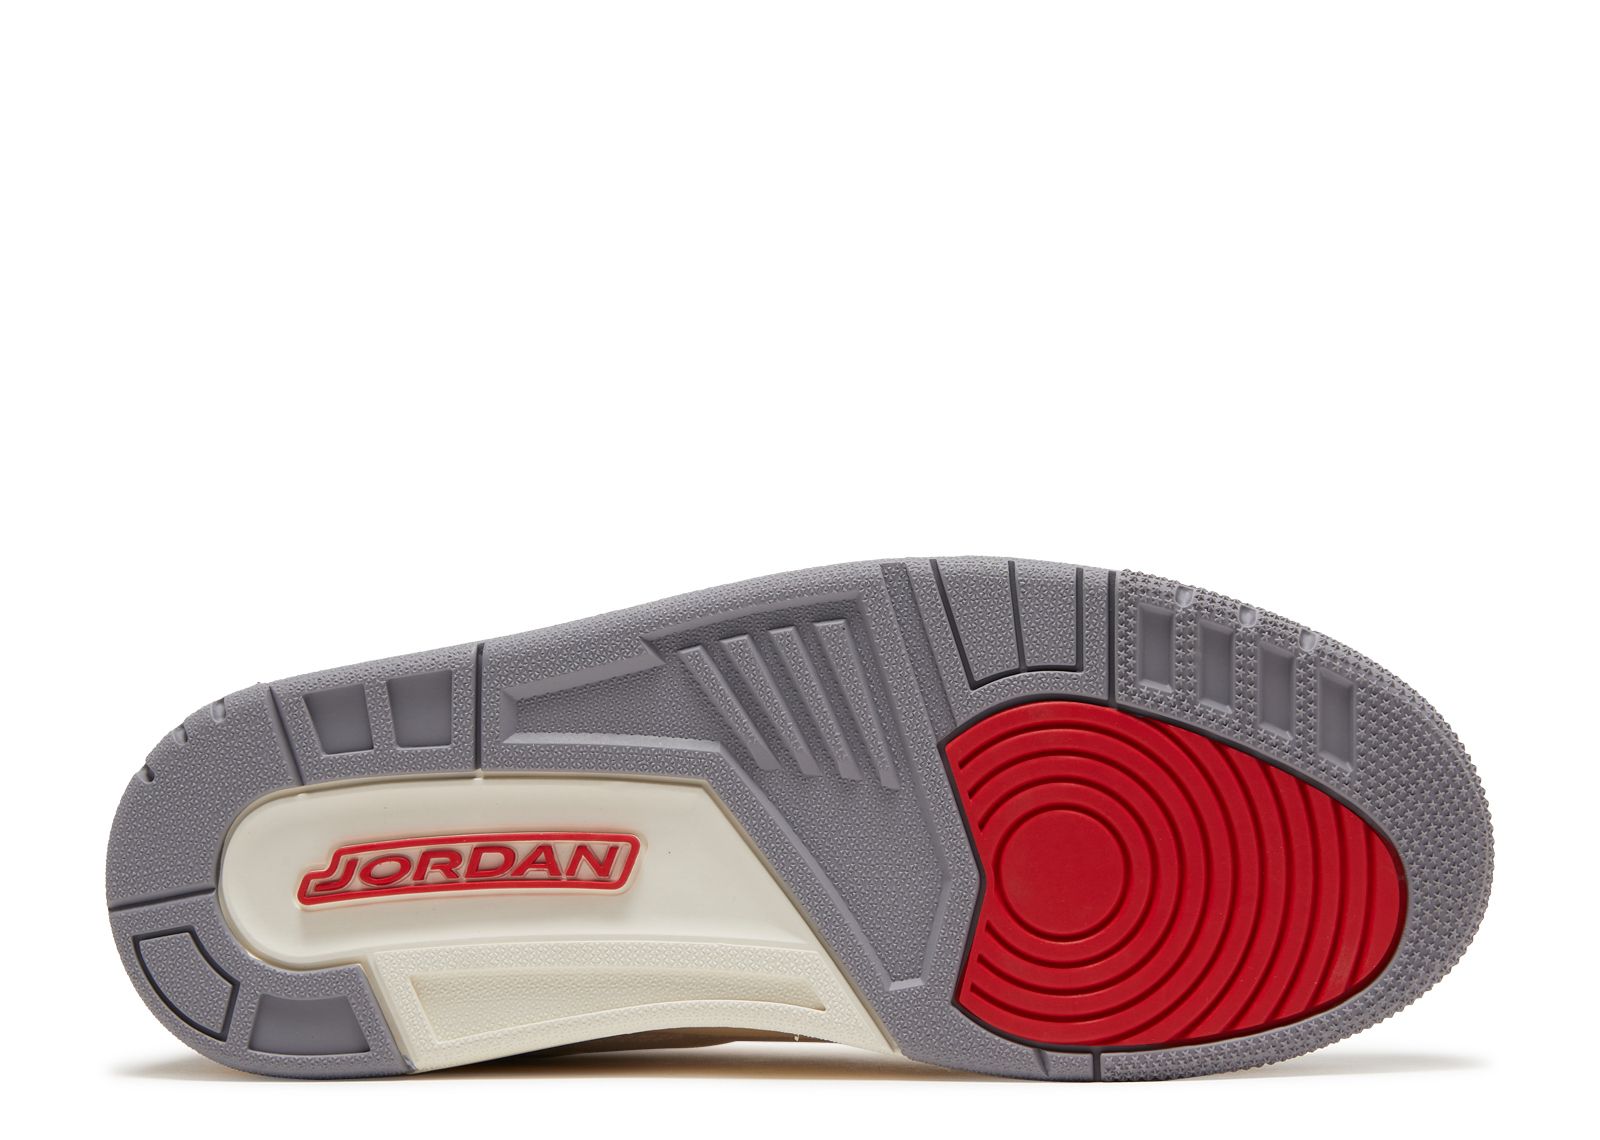 Sneakers Release – Jordan 3 Retro SE “Muslin” Men’s  Shoe Dropping 3/25